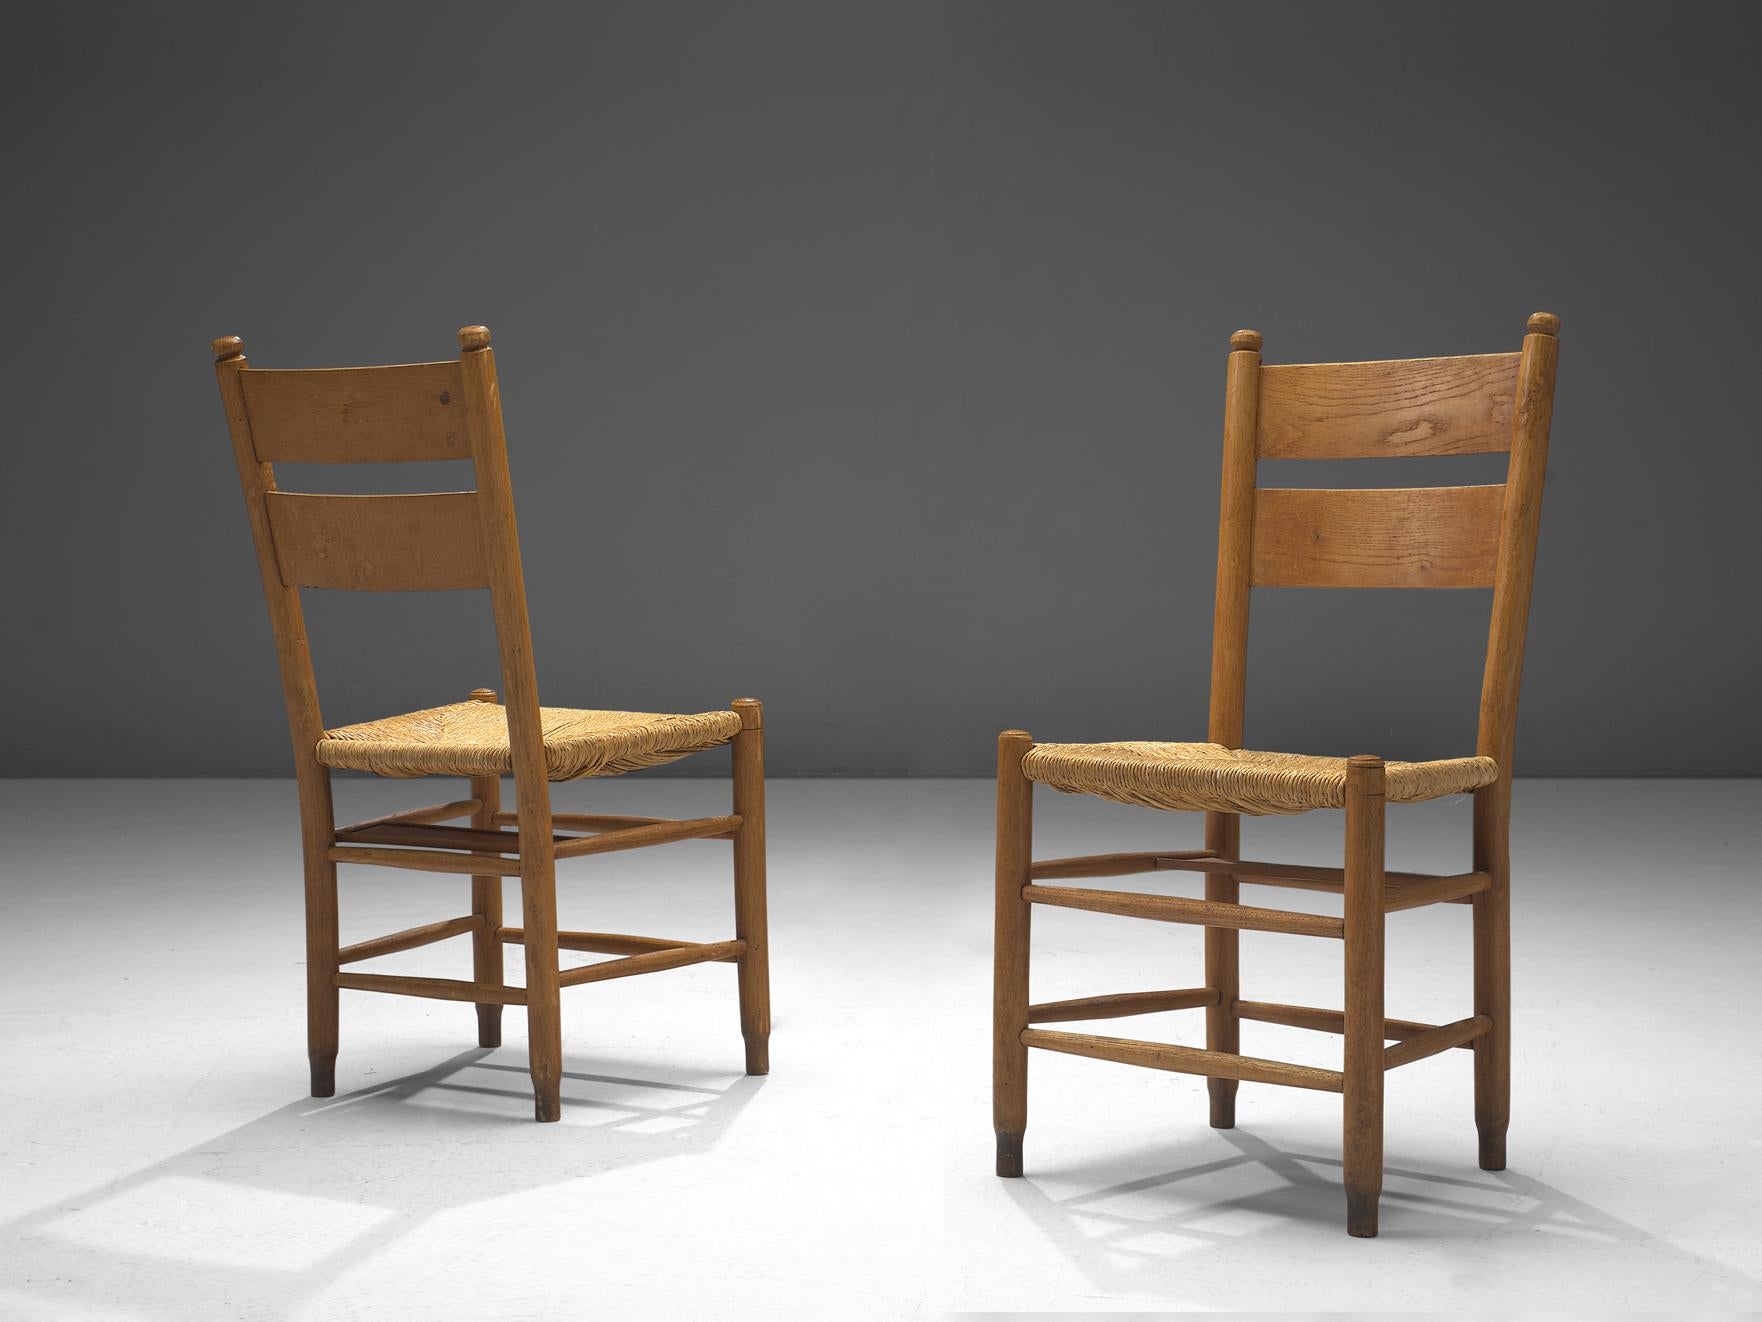 Paire de chaises de salle à manger, chêne, osier paille, Danemark, années 1960 

Cette collection comprend un large éventail de chaises d'église danoises rustiques, construites en bois de chêne durable et caractérisées par leurs sièges en paille